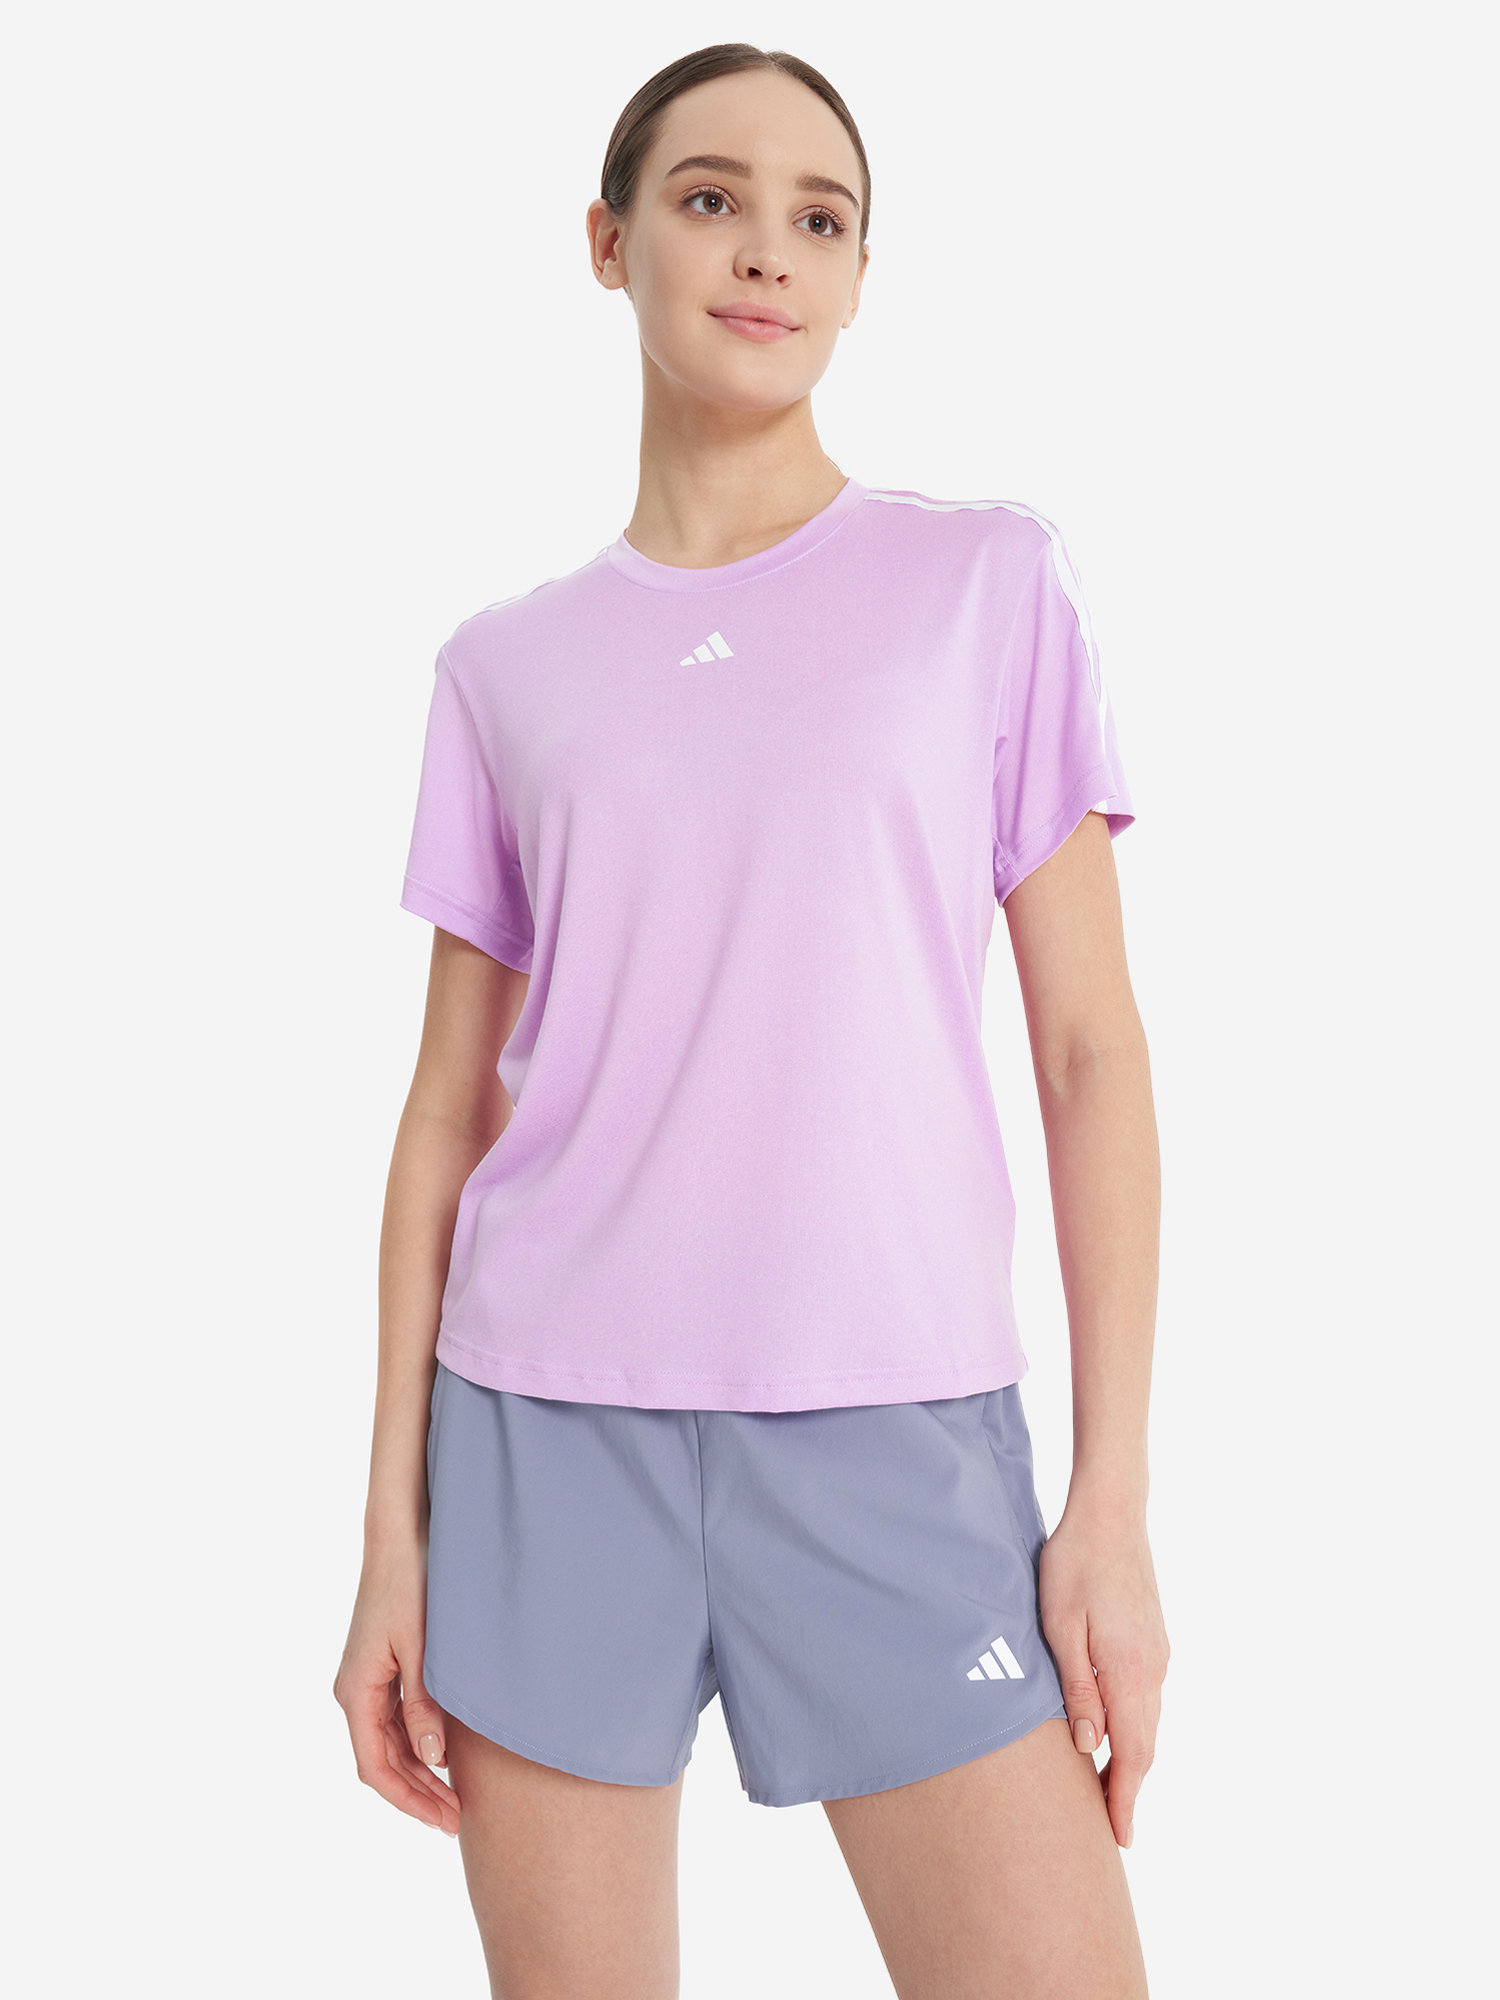 Футболка женская adidas, Фиолетовый кроссовки для мальчиков adidas cross em up select j wide фиолетовый